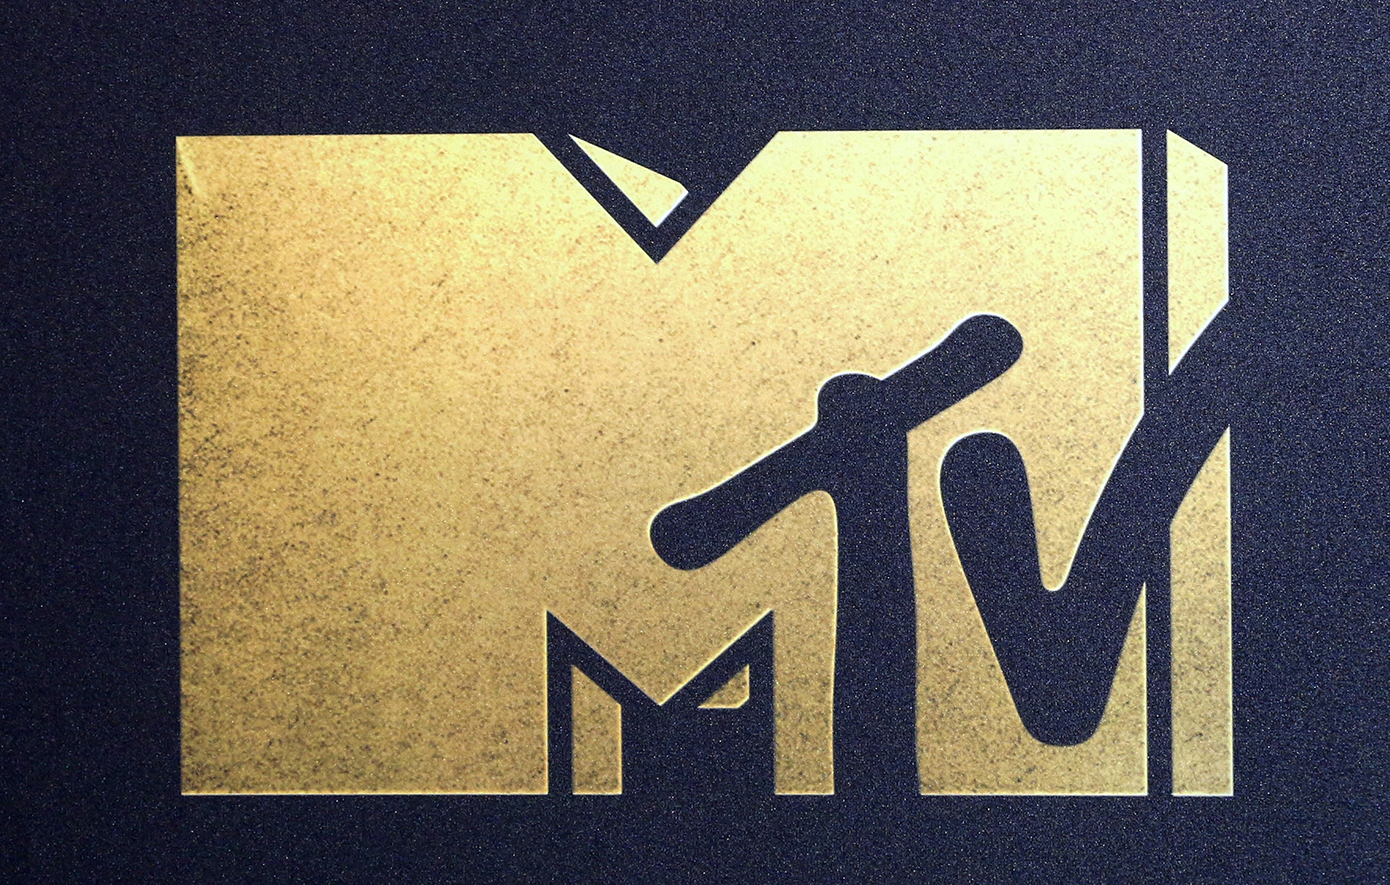 Στη νέα αρένα του Μάντσεστερ η τελετή των Ευρωπαϊκών Βραβείων του MTV